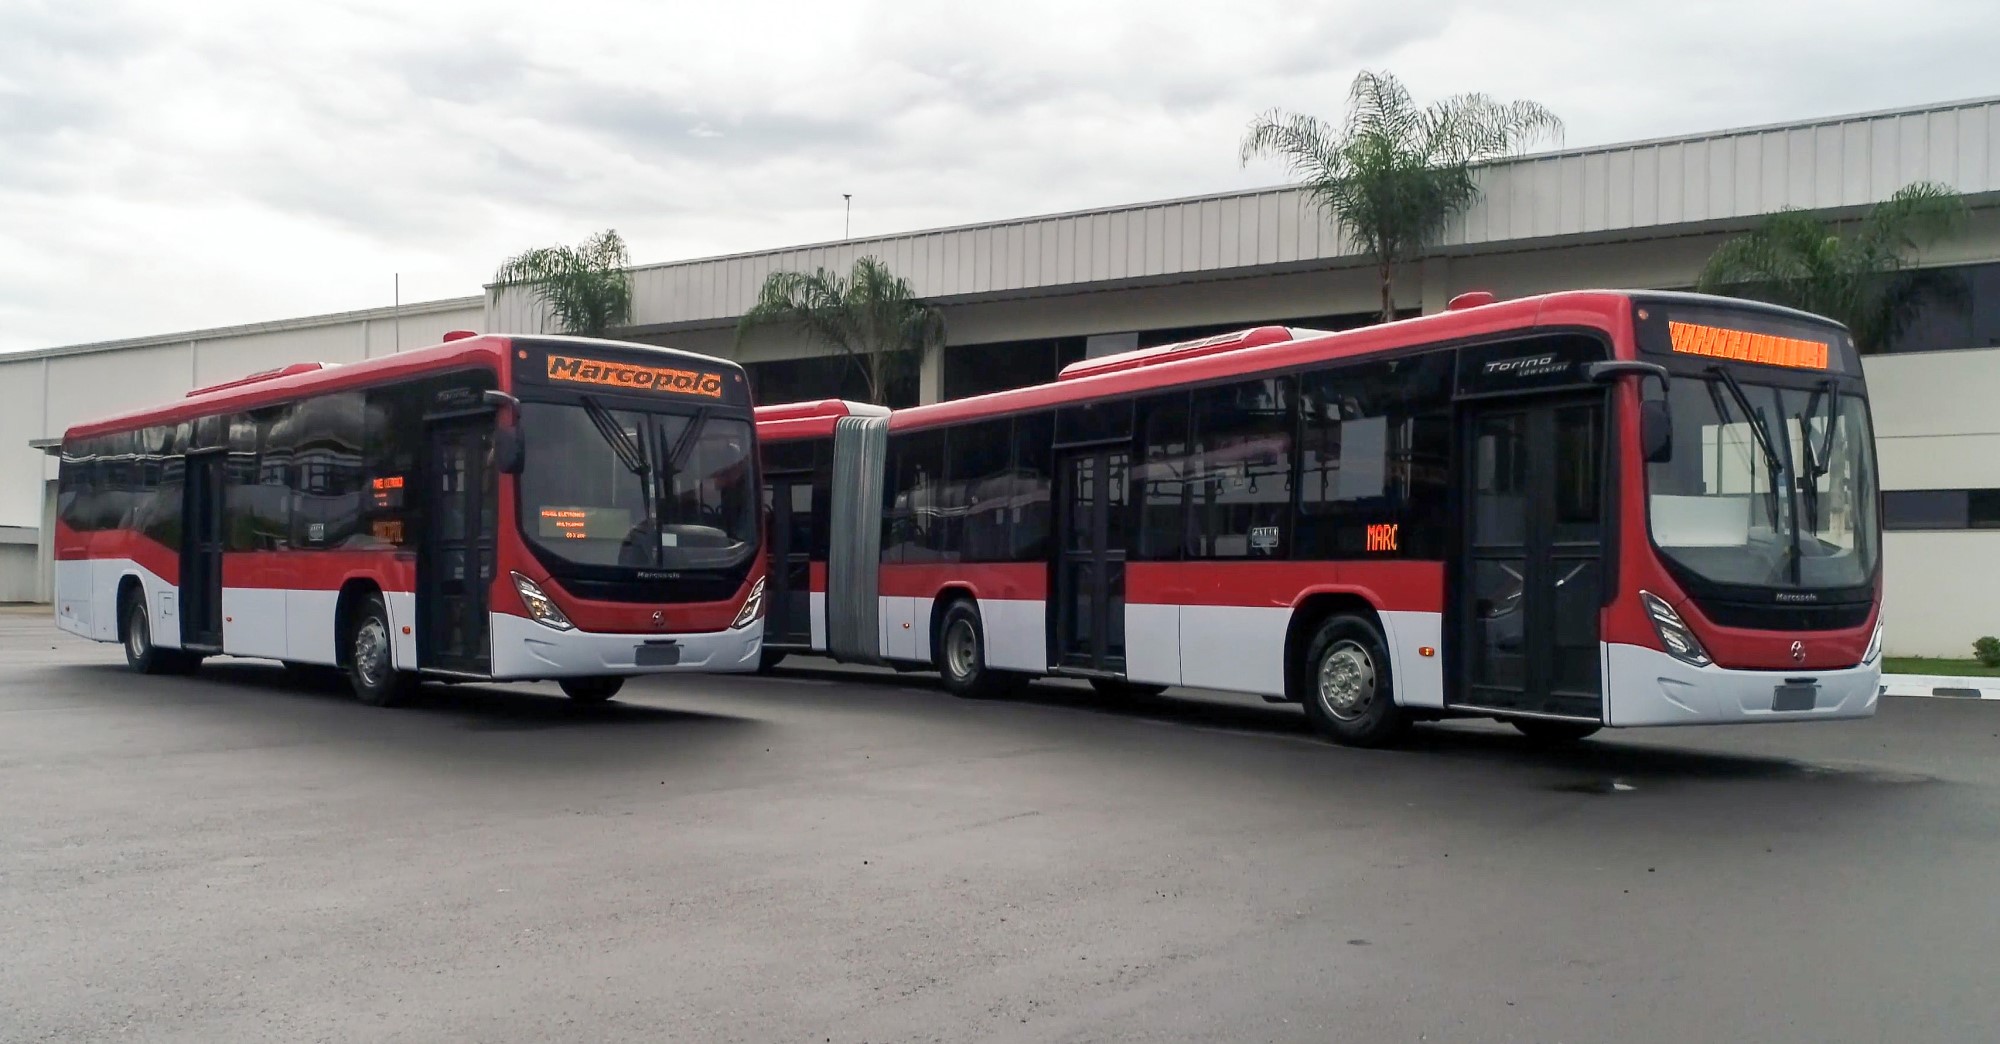 Marcopolo embarca 150 ônibus para o Chile